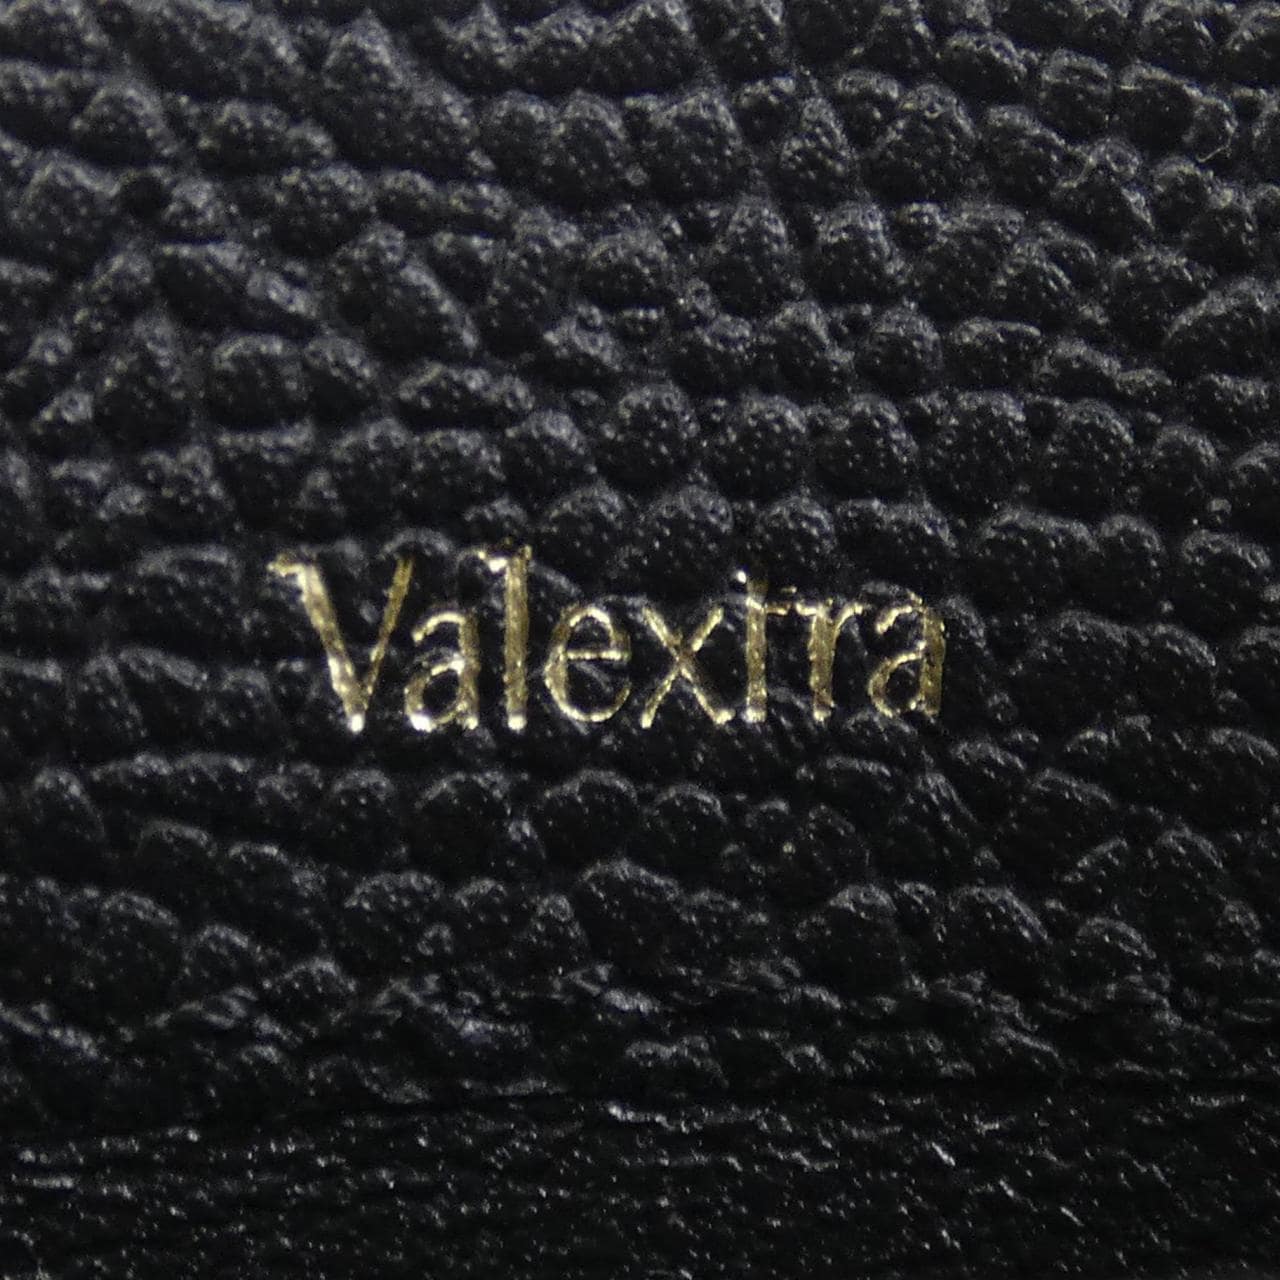 ヴァレクストラ VALEXTRA CARD CASE